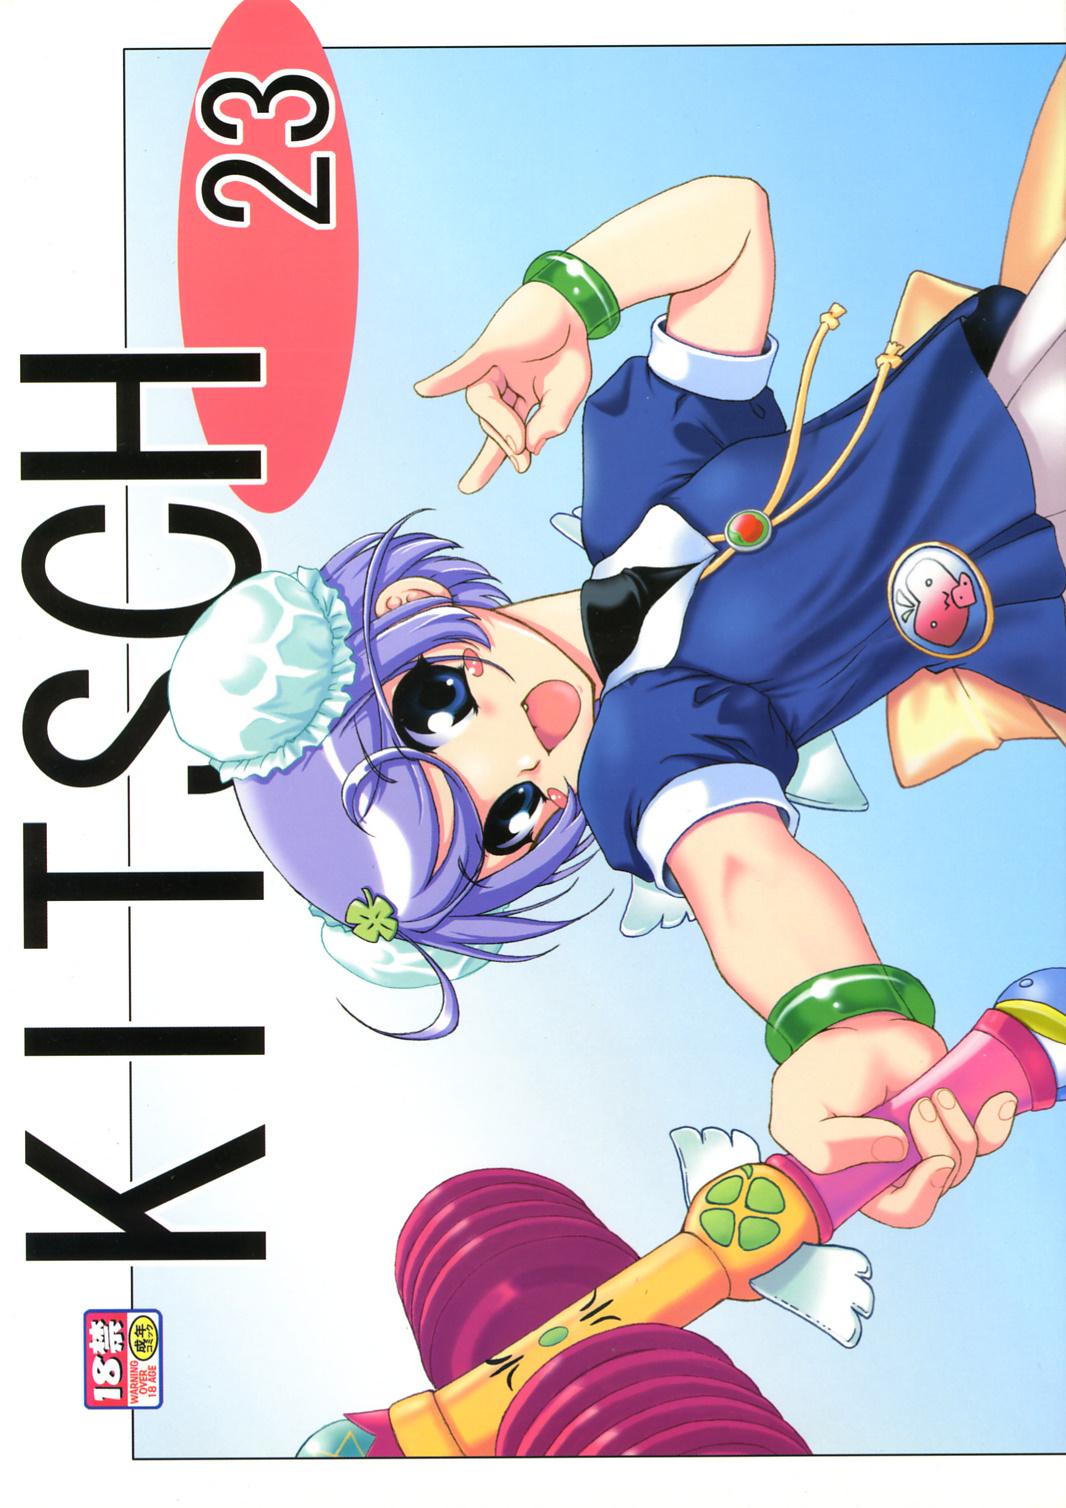 KITSCH 23th Issue 0